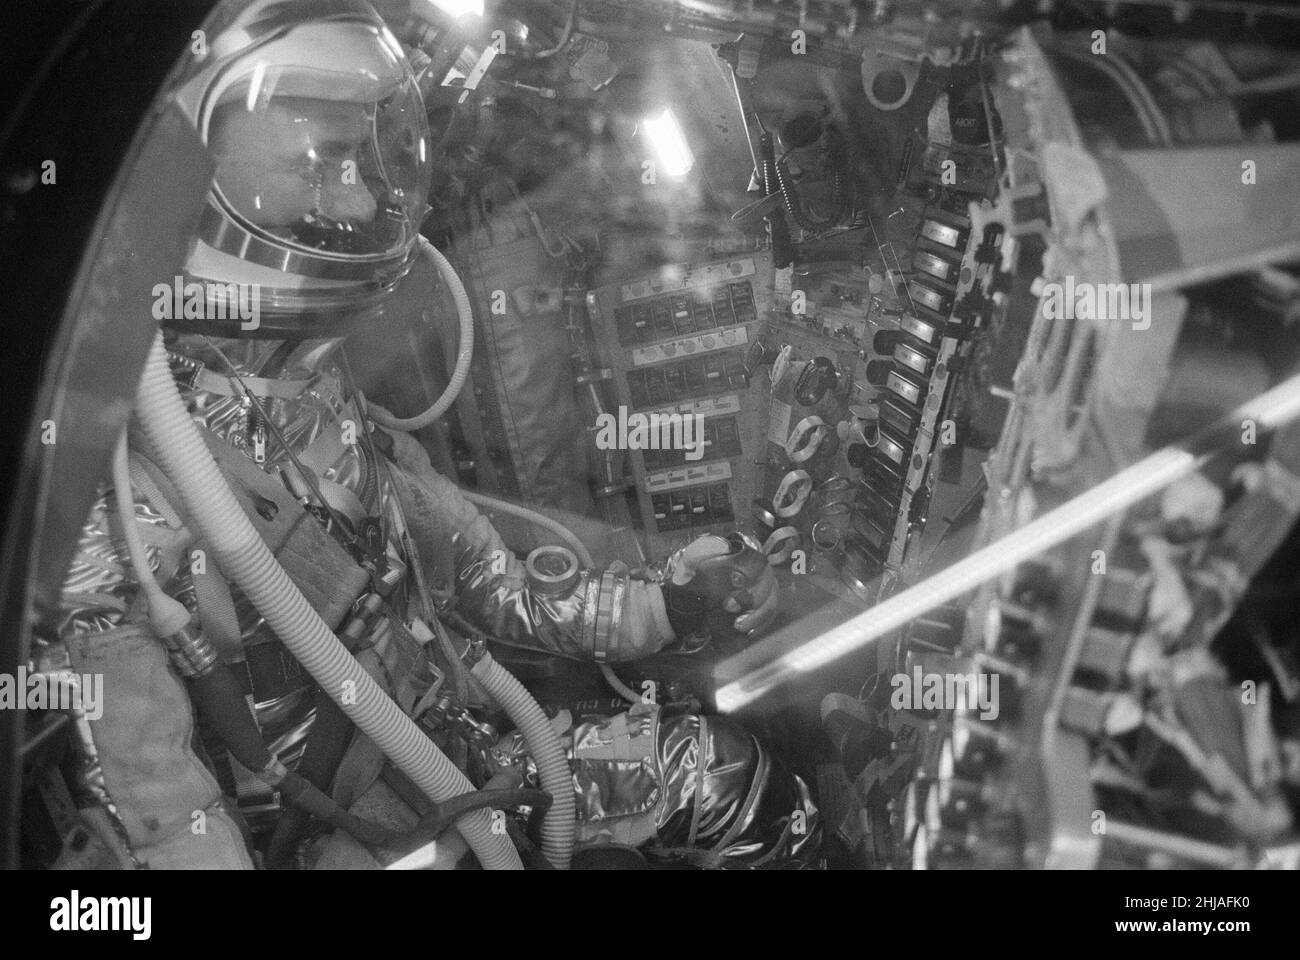 Innenansicht der Mercury Raumsonde Friendship 7, aufgenommen bei der Ankunft im Science Museum, London, Montag, 14th. Mai 1962. Die Raumkapsel wurde von Astronaut John Glenn (20/02/1962) gesteuert, der drei Umlaufbahnen der Erde durchführte, was ihn zum ersten US-Astronauten machte, der die Erde umkreist, und zum dritten US-Astronauten im All (hinter 1st Alan B. Shepard und 2nd Oberstleutnant Virgil Ivan Gus Grissom). Stockfoto